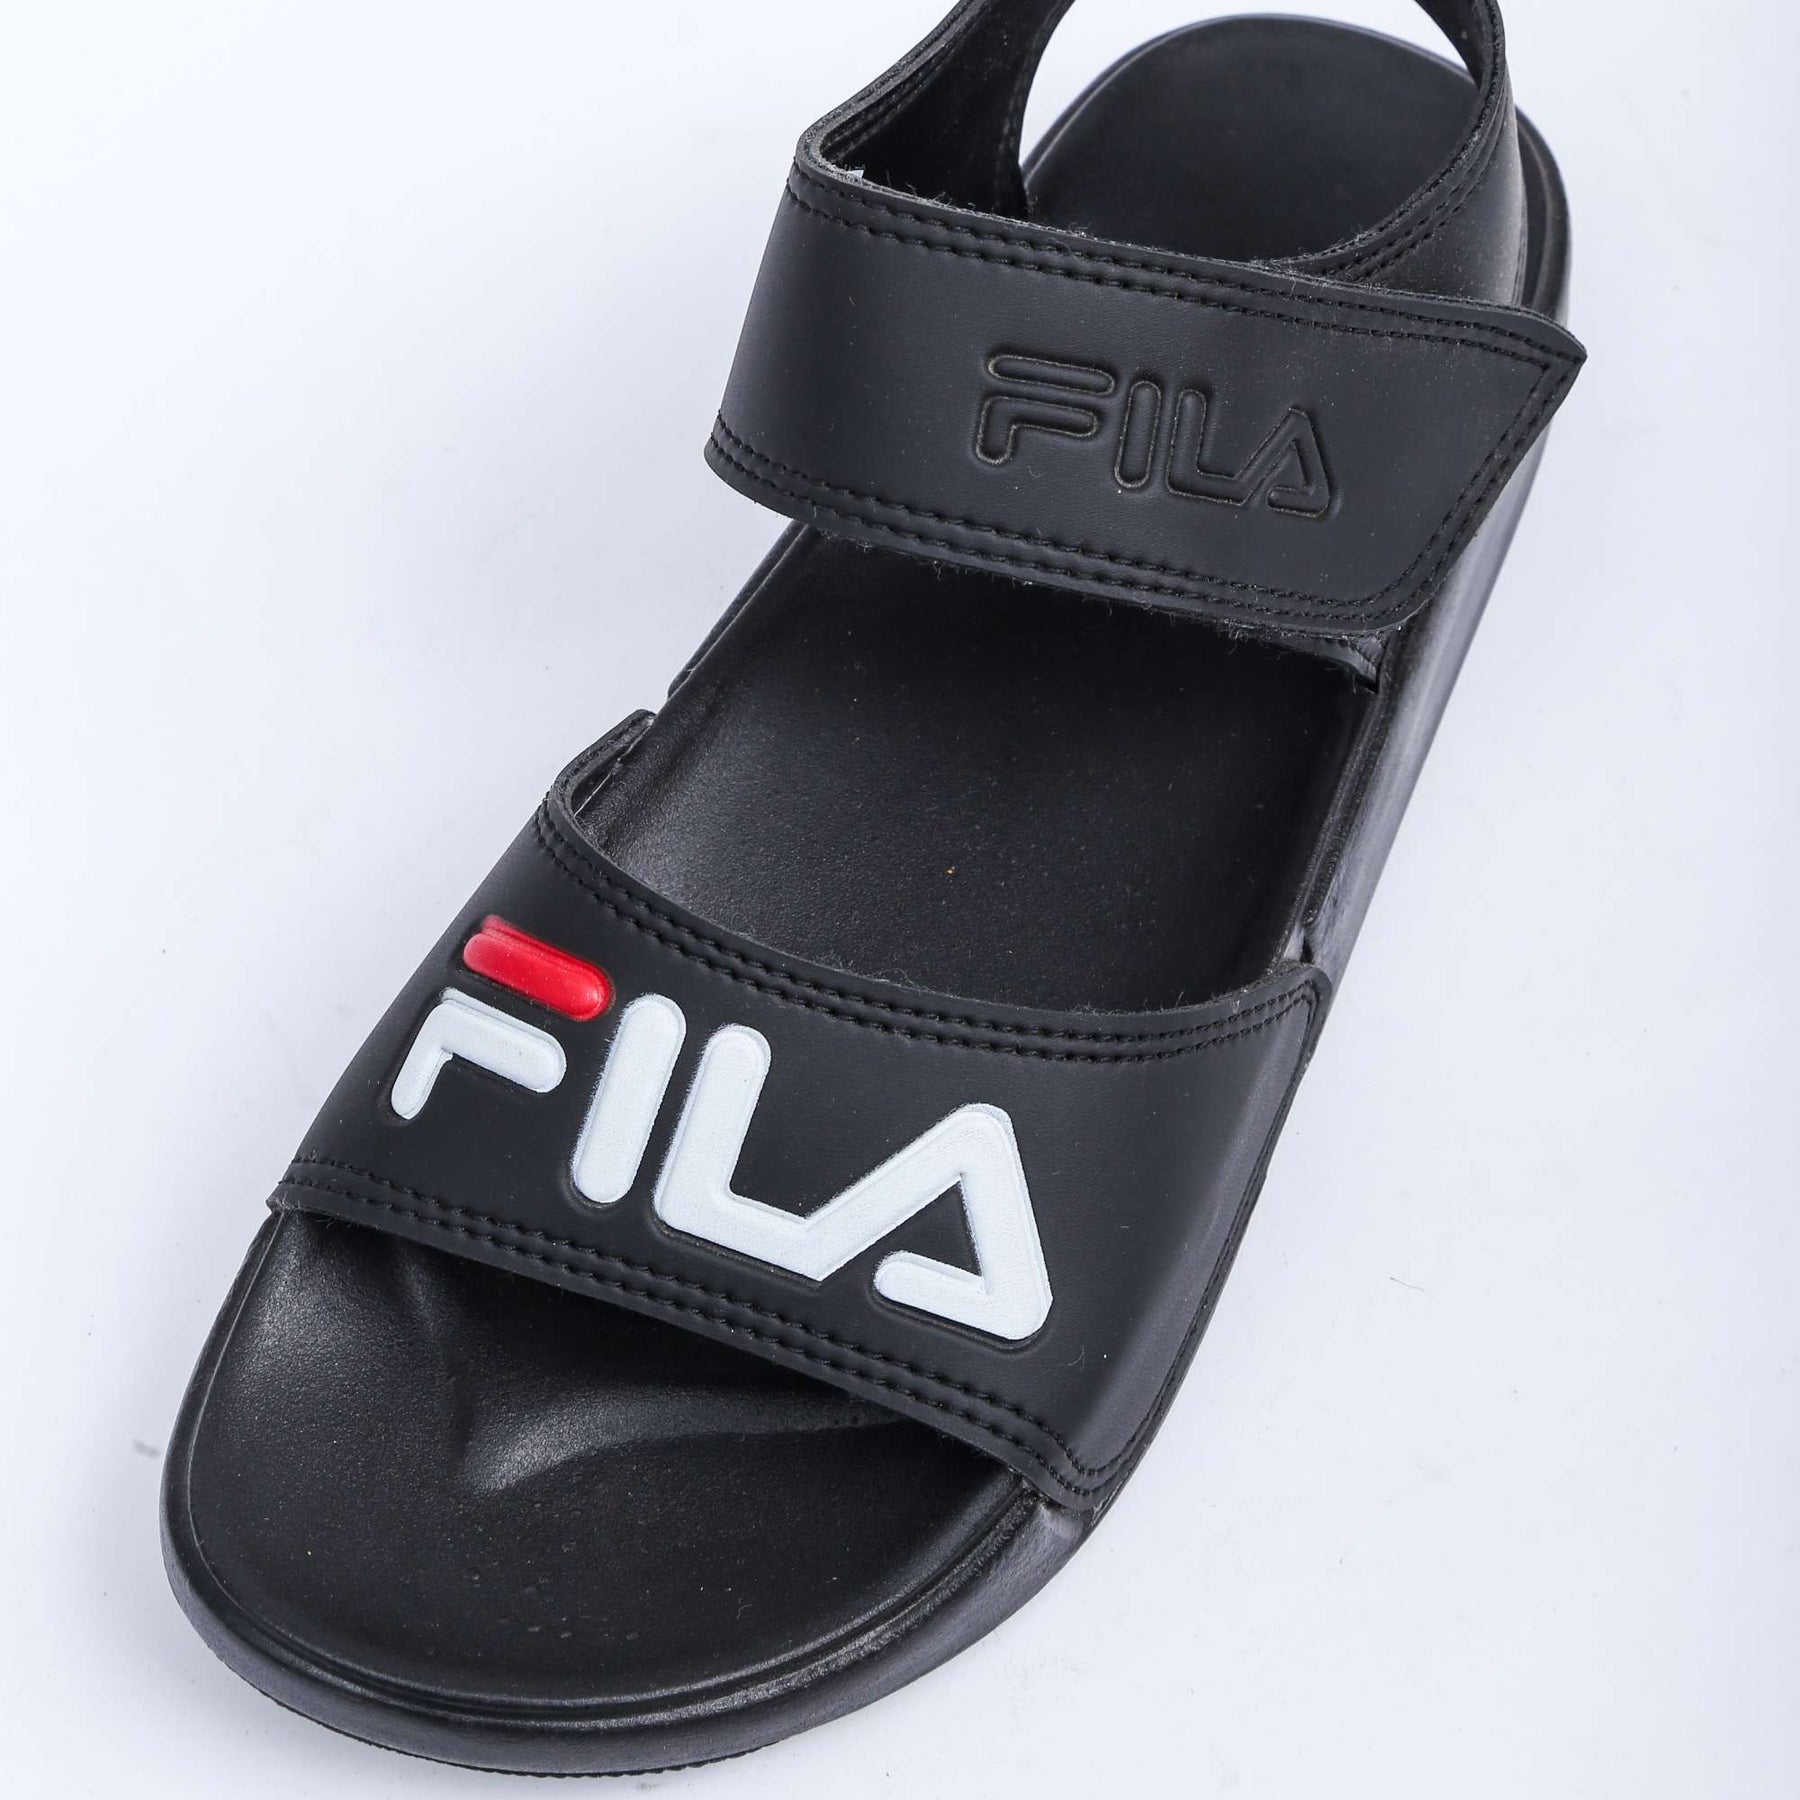 Fila Sandles Black - Premium Shoes from perfectshop - Just Rs.1499! Shop now at Sablelo.pk